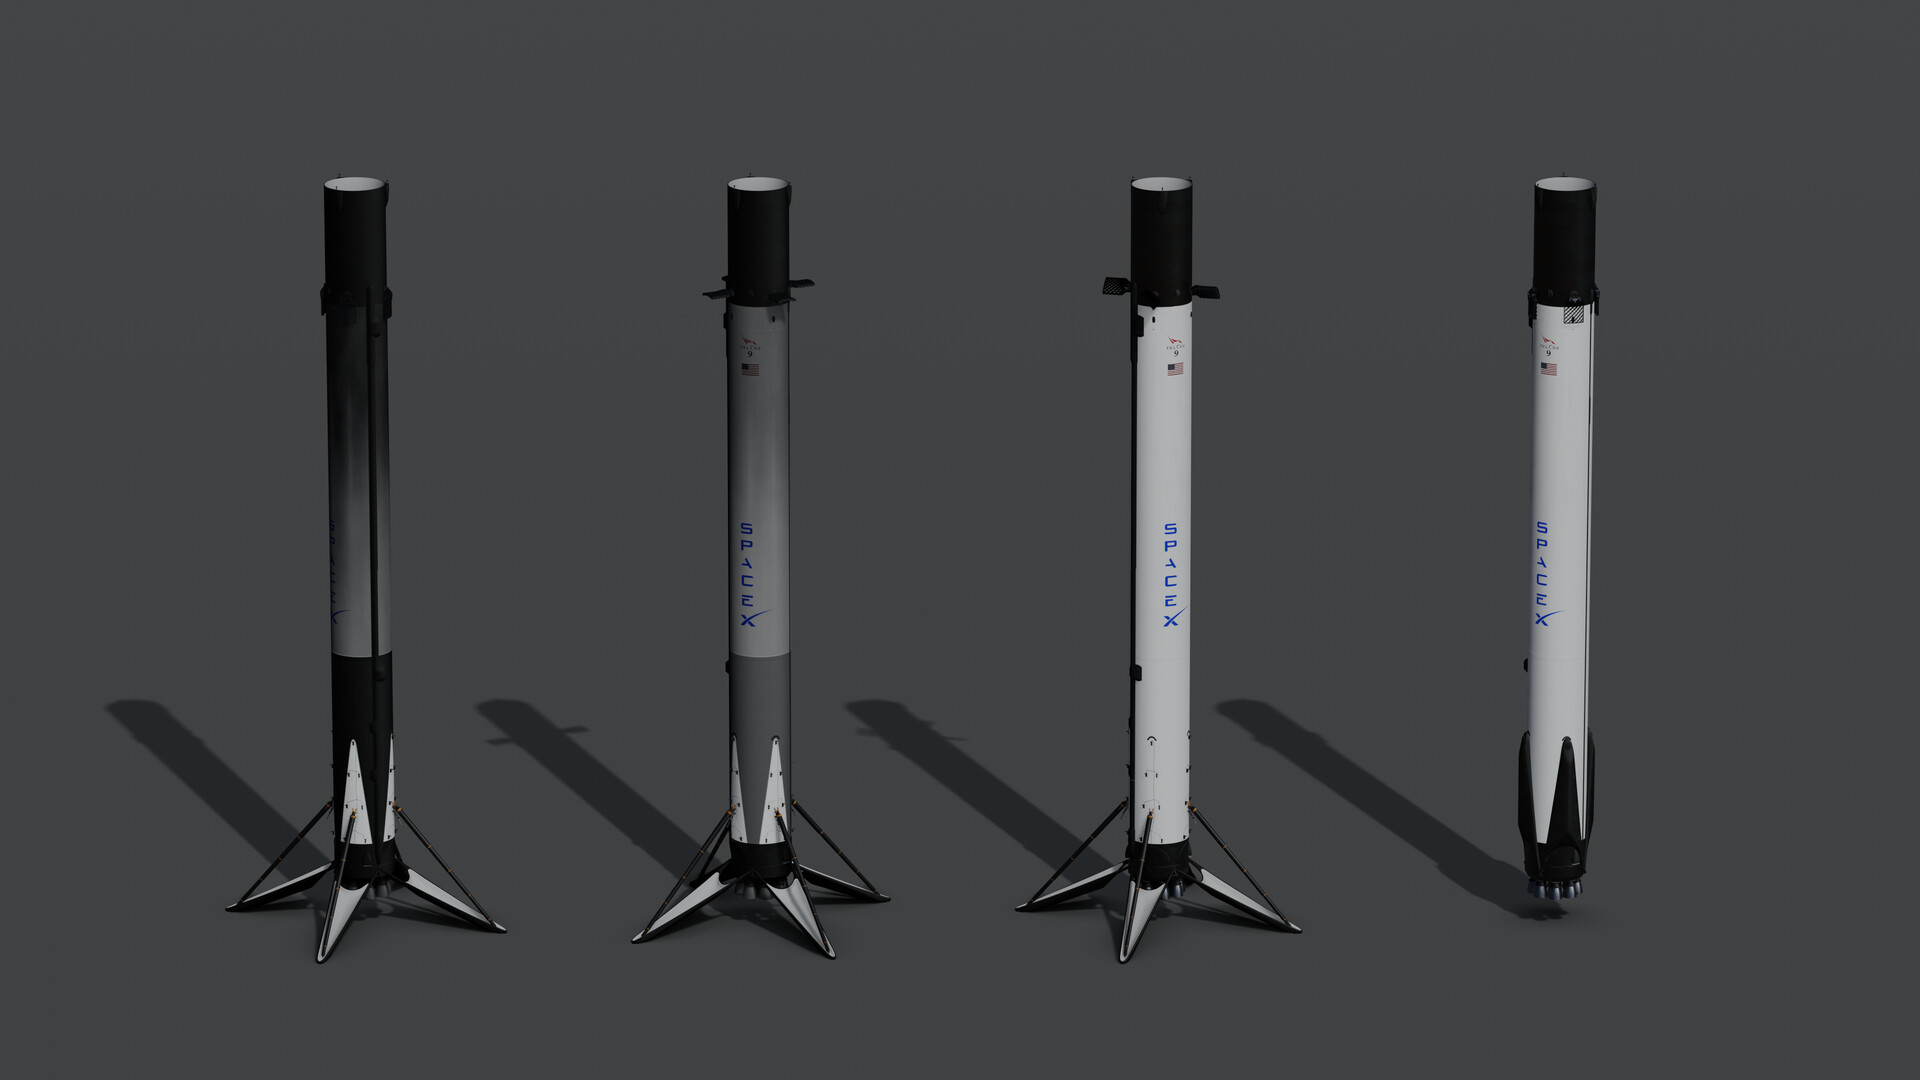 Spacex falcon 9. Falcon 9. РН Falcon 9. Falcon 9 v1.0.